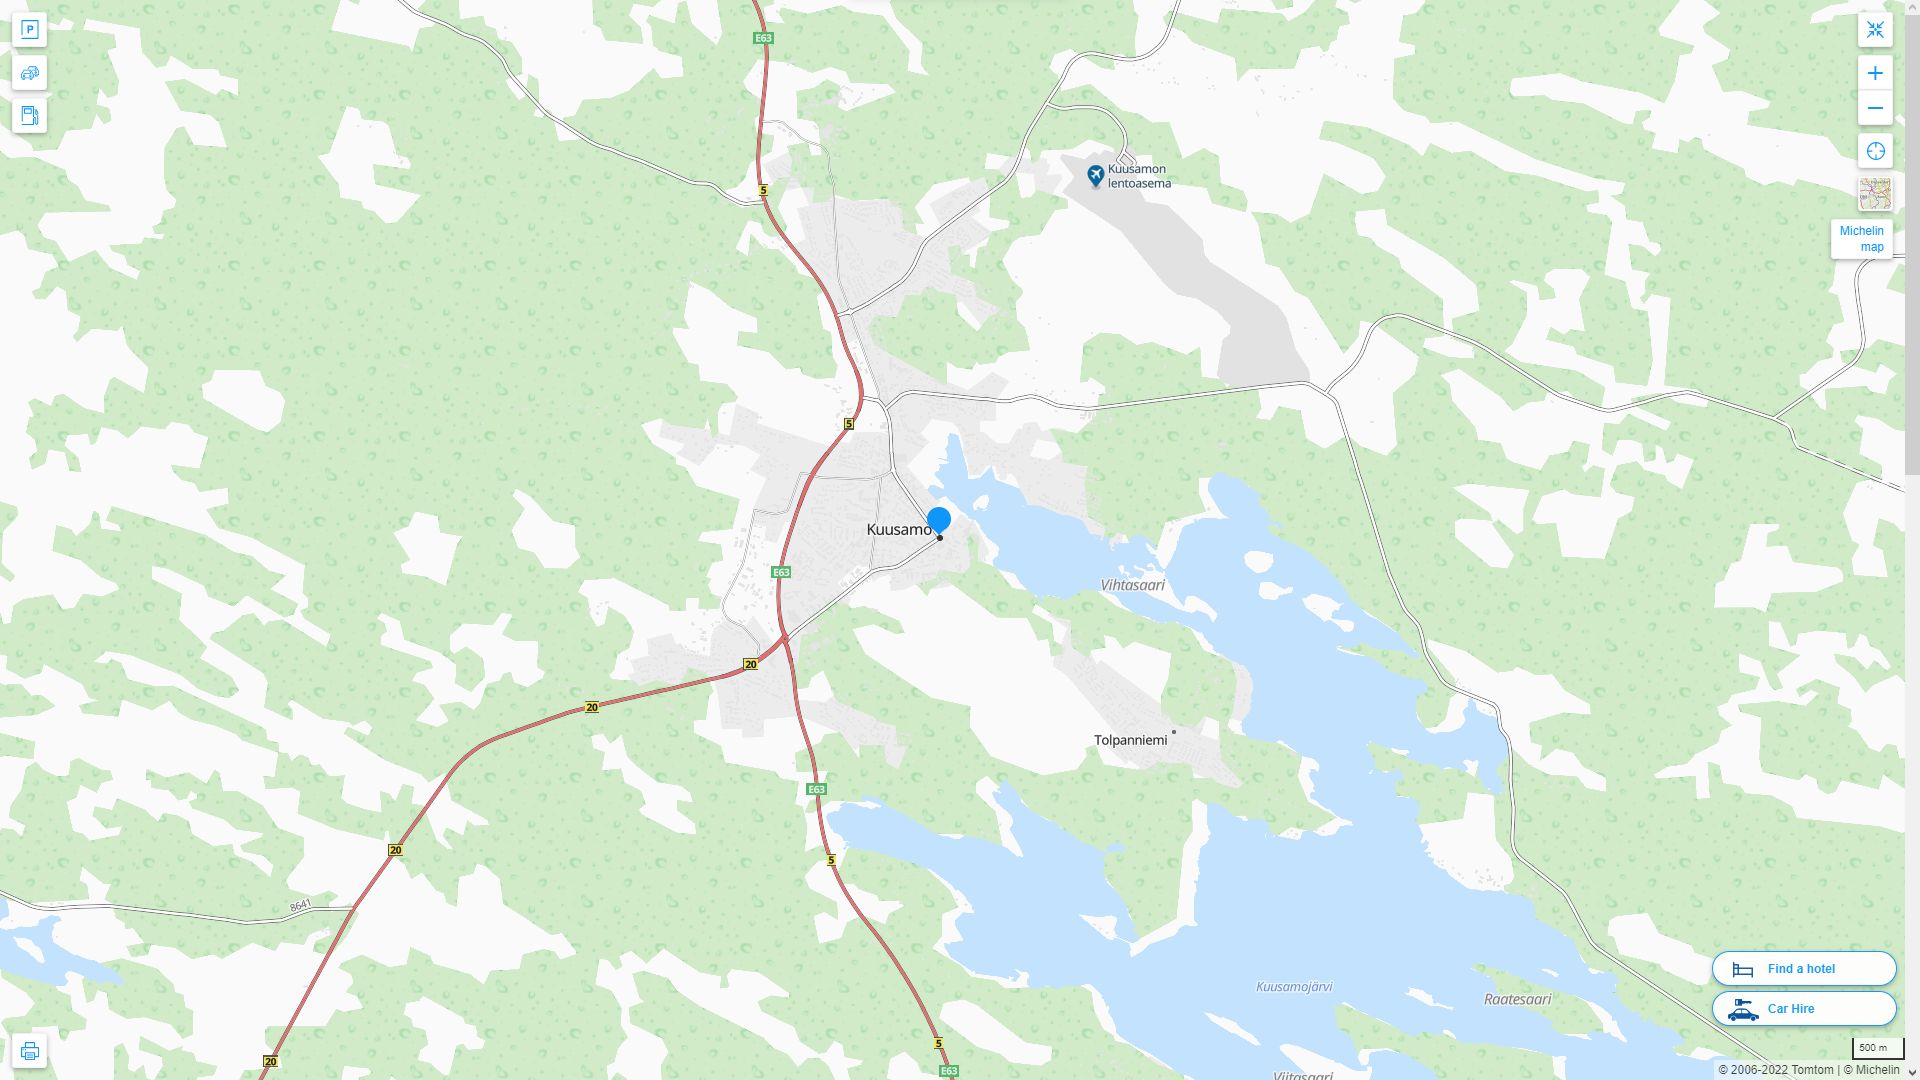 Kuusamo Highway and Road Map